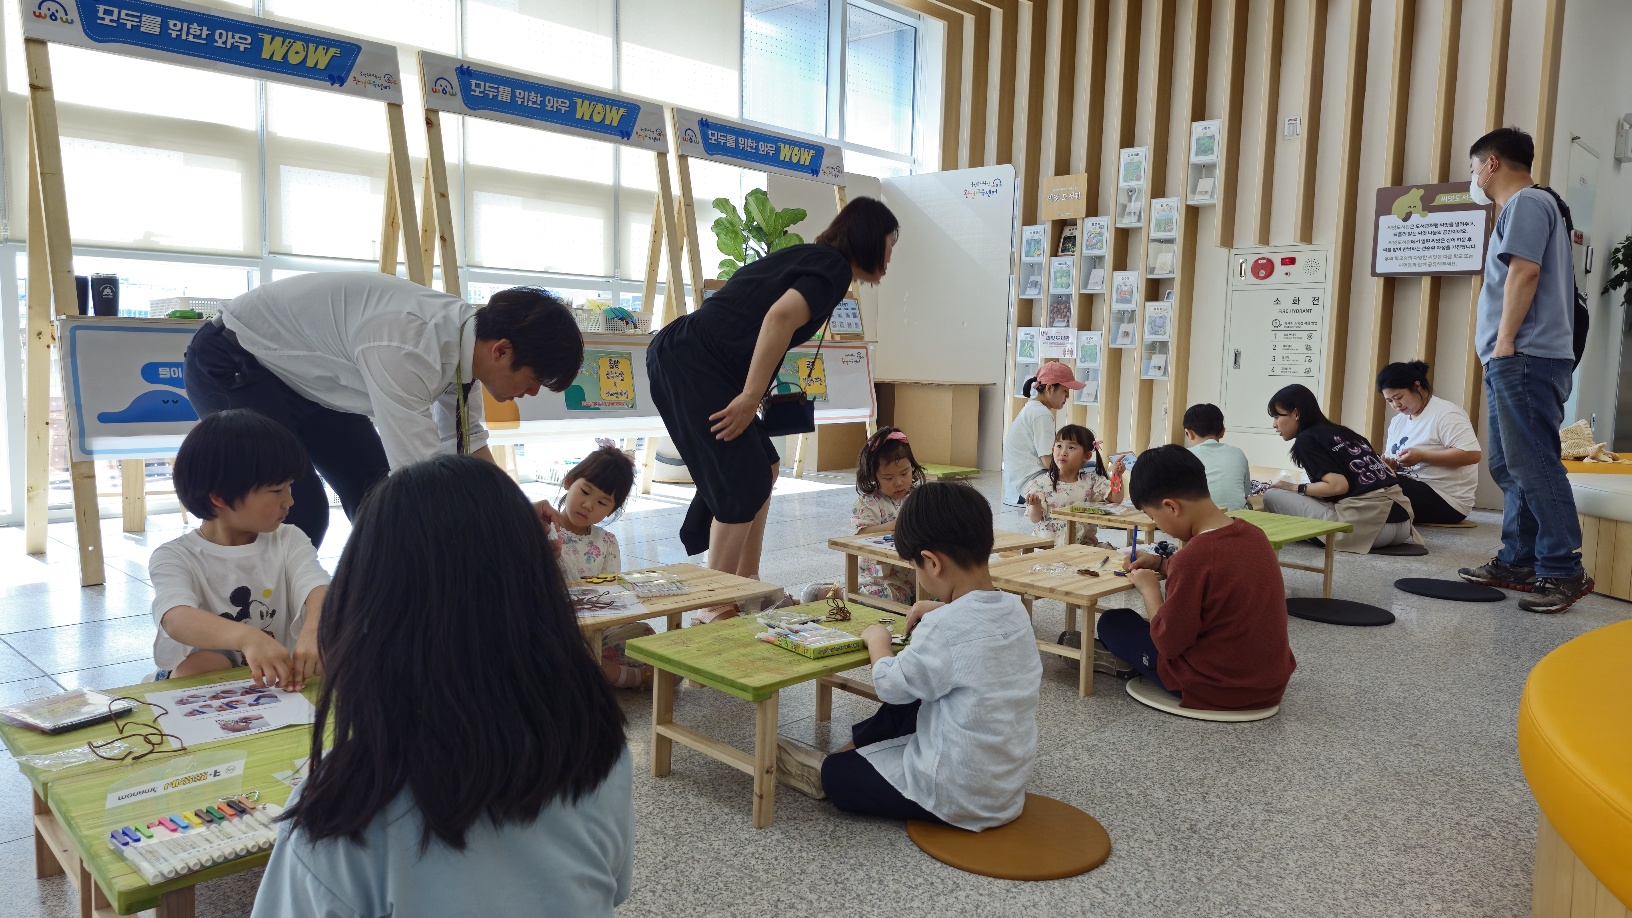 [어린이날 센터 체험 프로그램]'와우 놀이터, 함께놀다.' 어린이날 기획 프로그램으로 곤충눈알만들기, 키링 만들기 운영